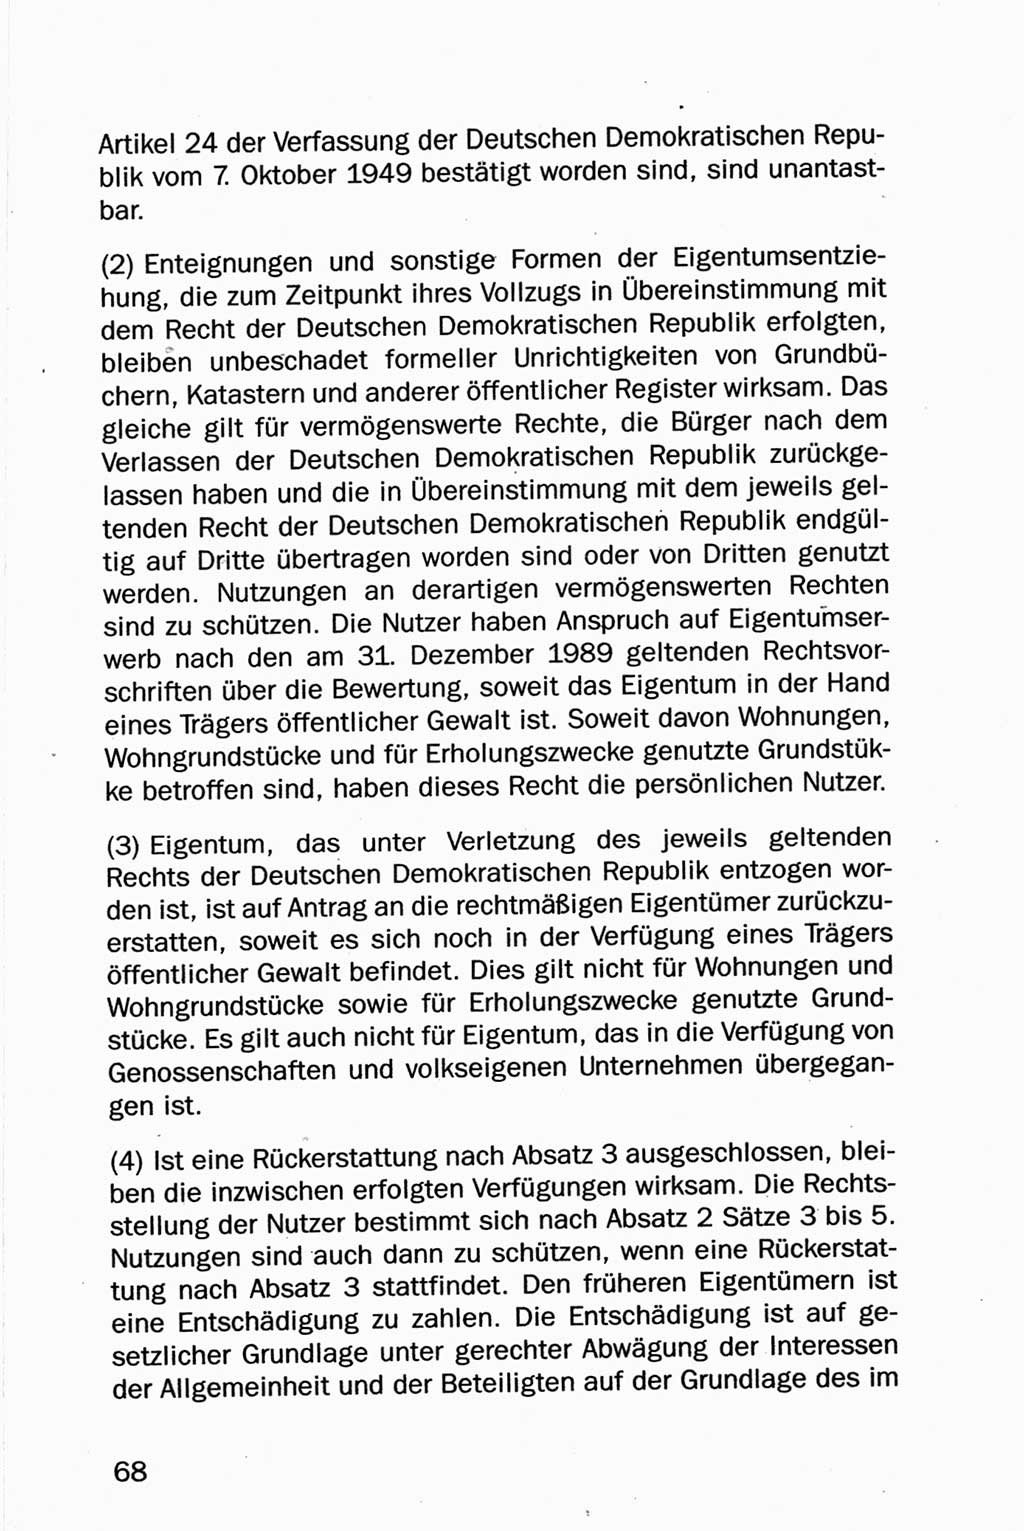 Entwurf Verfassung der Deutschen Demokratischen Republik (DDR), Arbeitsgruppe "Neue Verfassung der DDR" des Runden Tisches, Berlin 1990, Seite 68 (Entw. Verf. DDR 1990, S. 68)